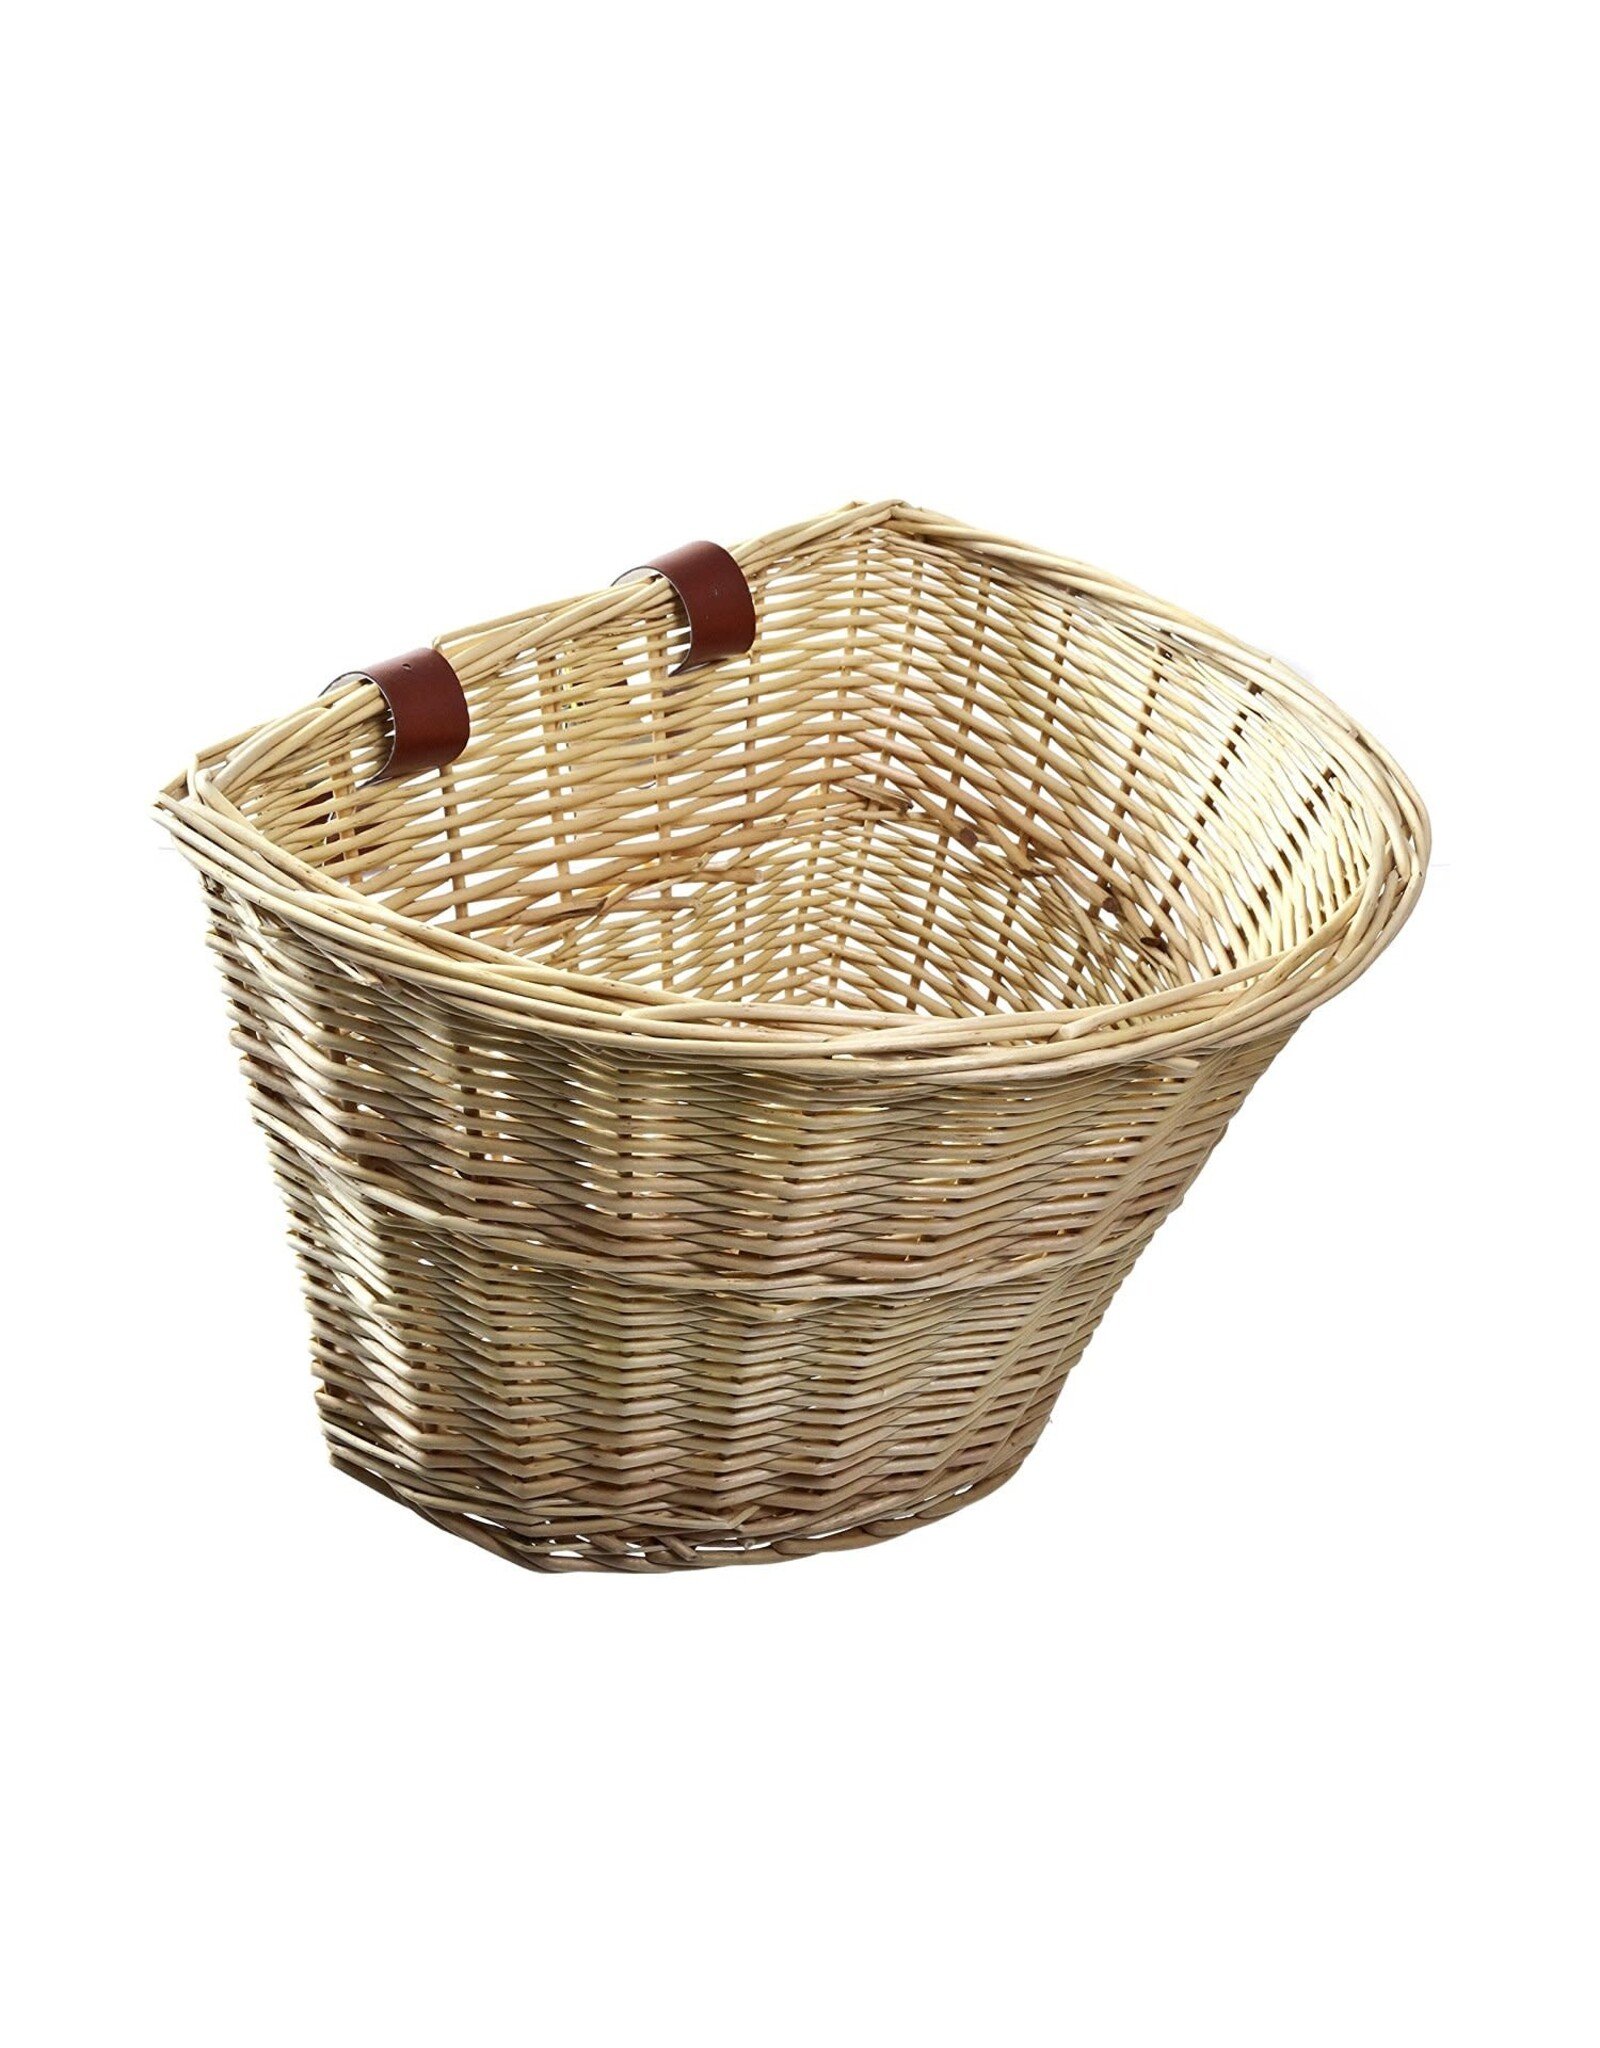 Summit Wicker Basket with Straps, Brown